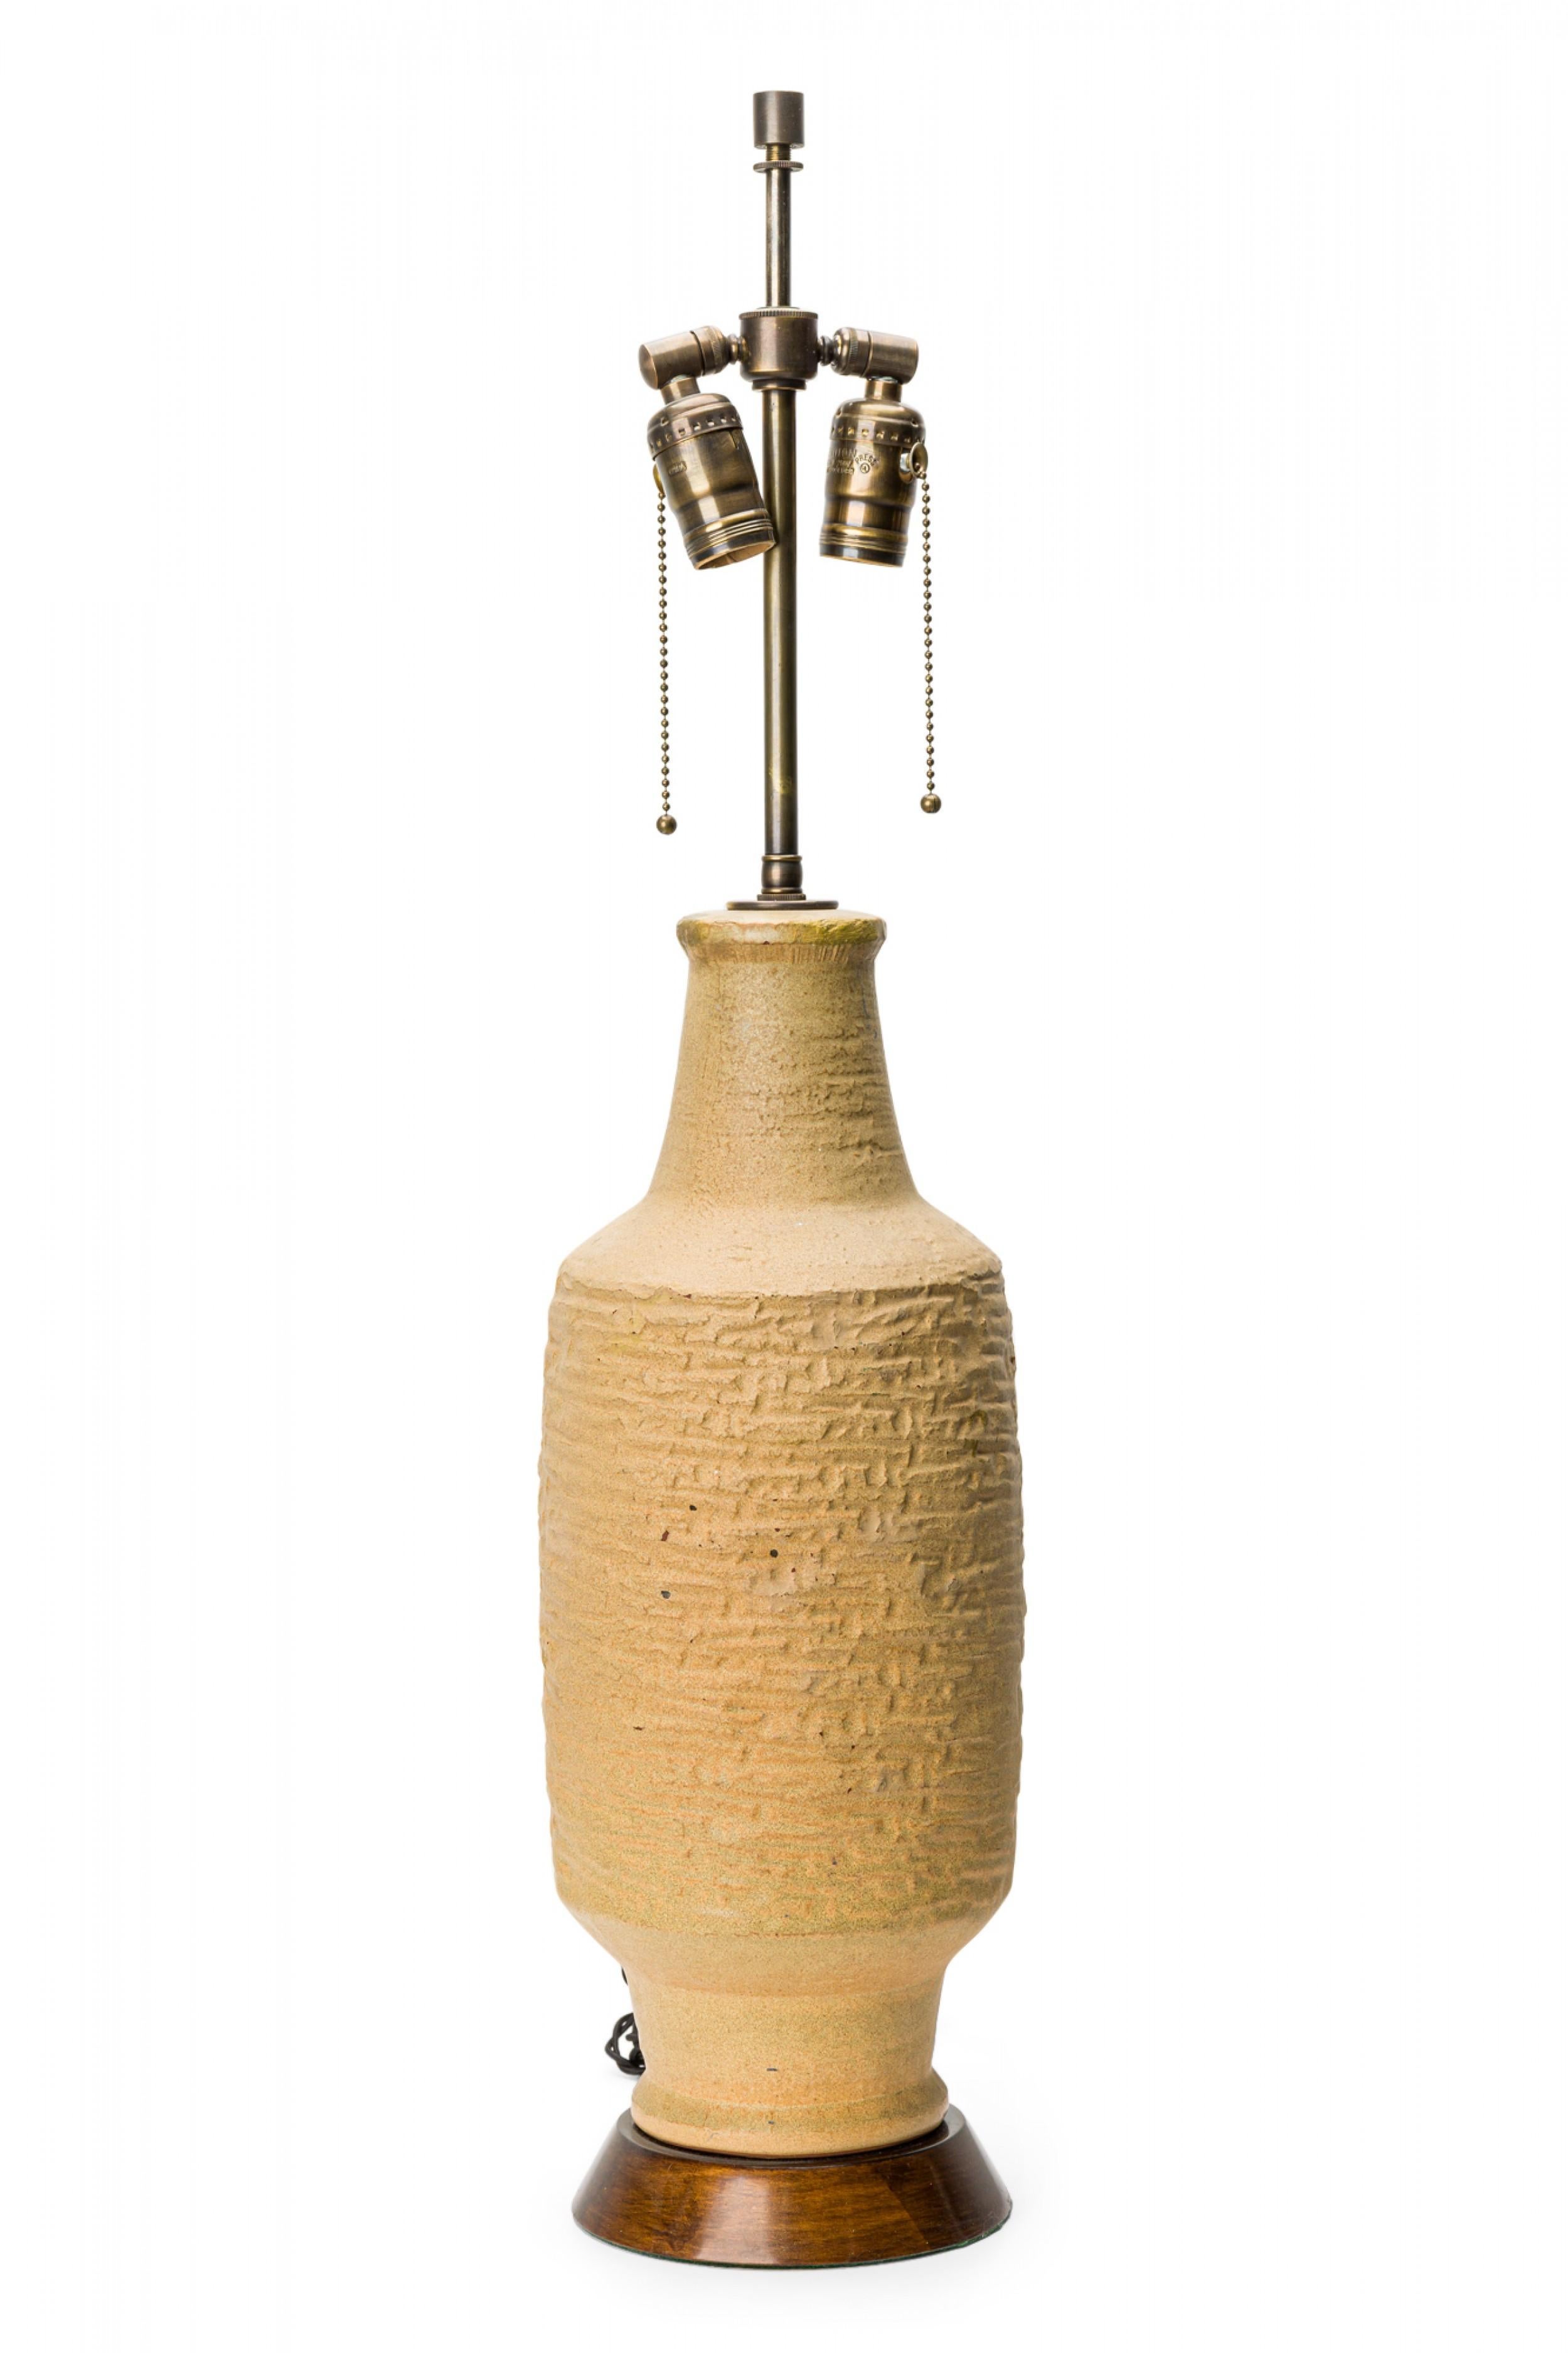 PAIRE de lampes de table cylindriques du milieu du siècle avec des formes en céramique beige texturée reposant sur une base ronde en bois. (DESIGN TECHNICS) (PRIX PAR PAIRE).